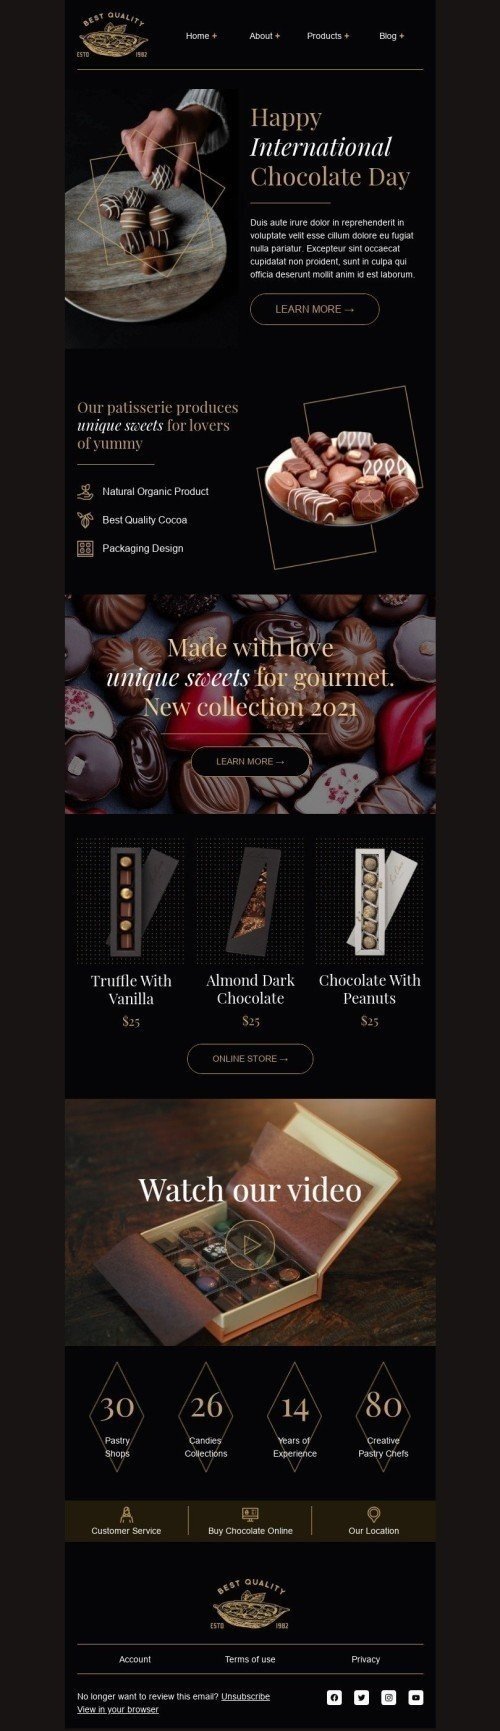 Plantilla de correo electrónico «Hecho con amor» de Día Internacional del Chocolate para la industria de Gastronomía Vista de móvil